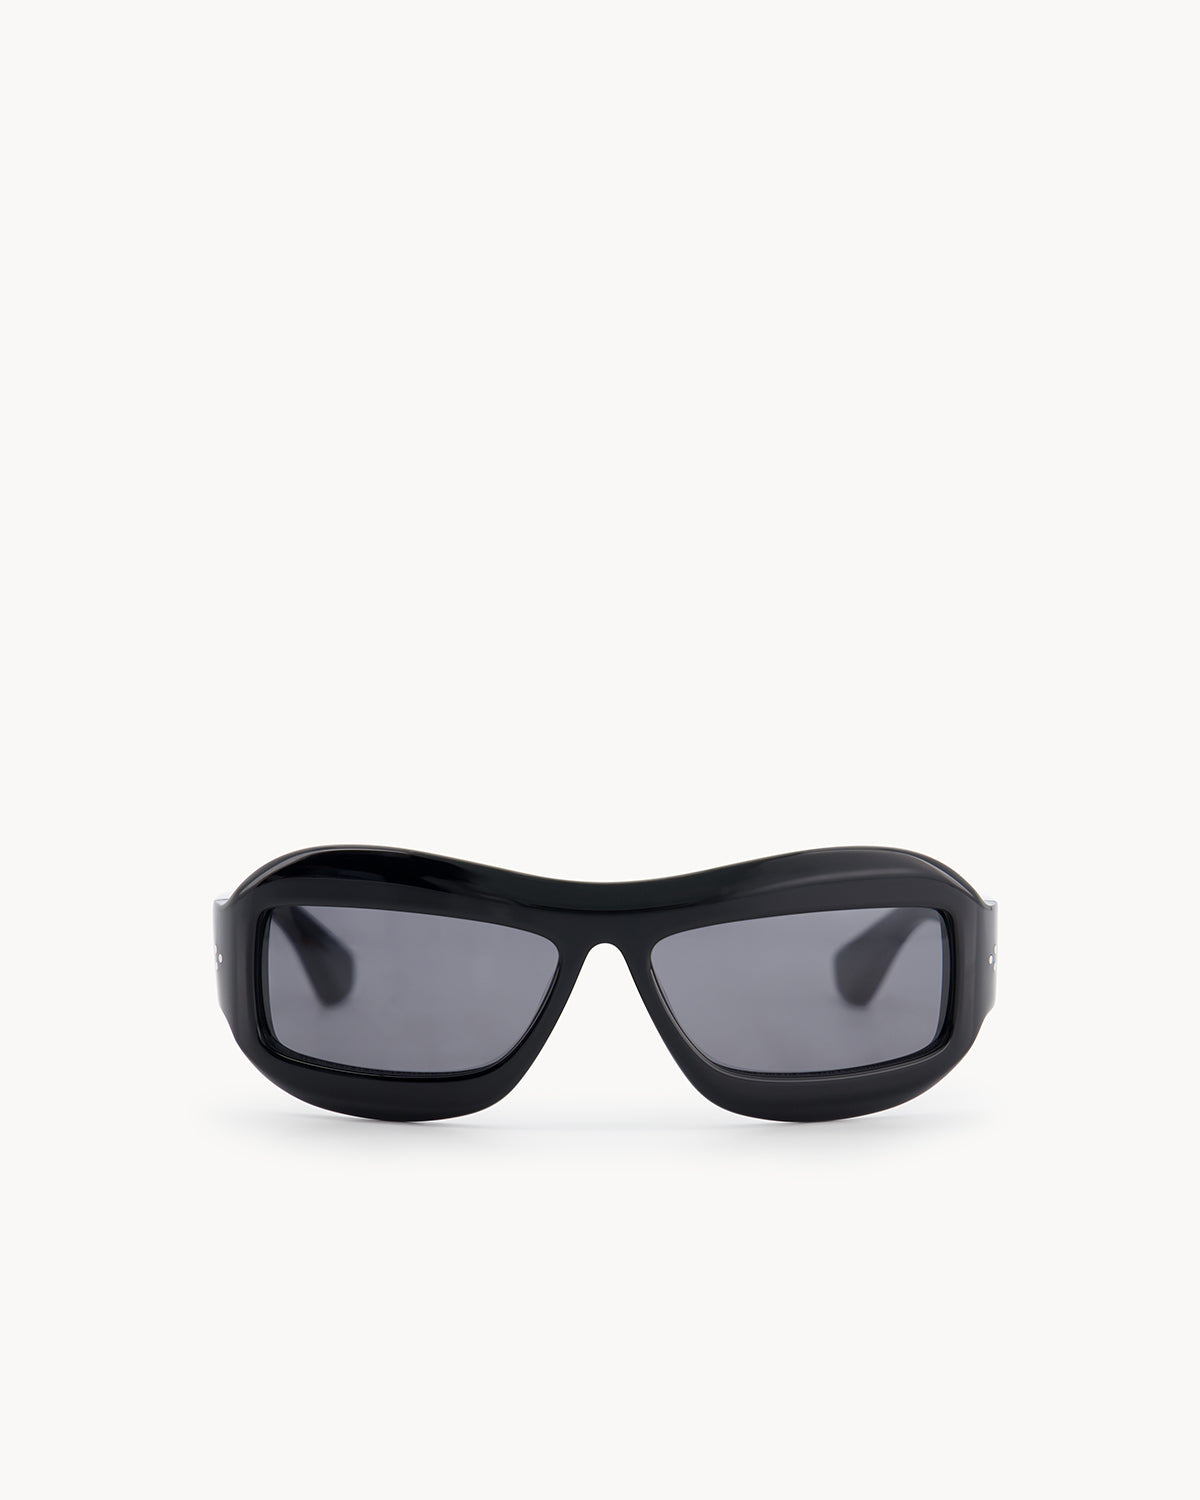 Port Tanger Zarin Sunglasses in Black Acetate and Black Lenses 1